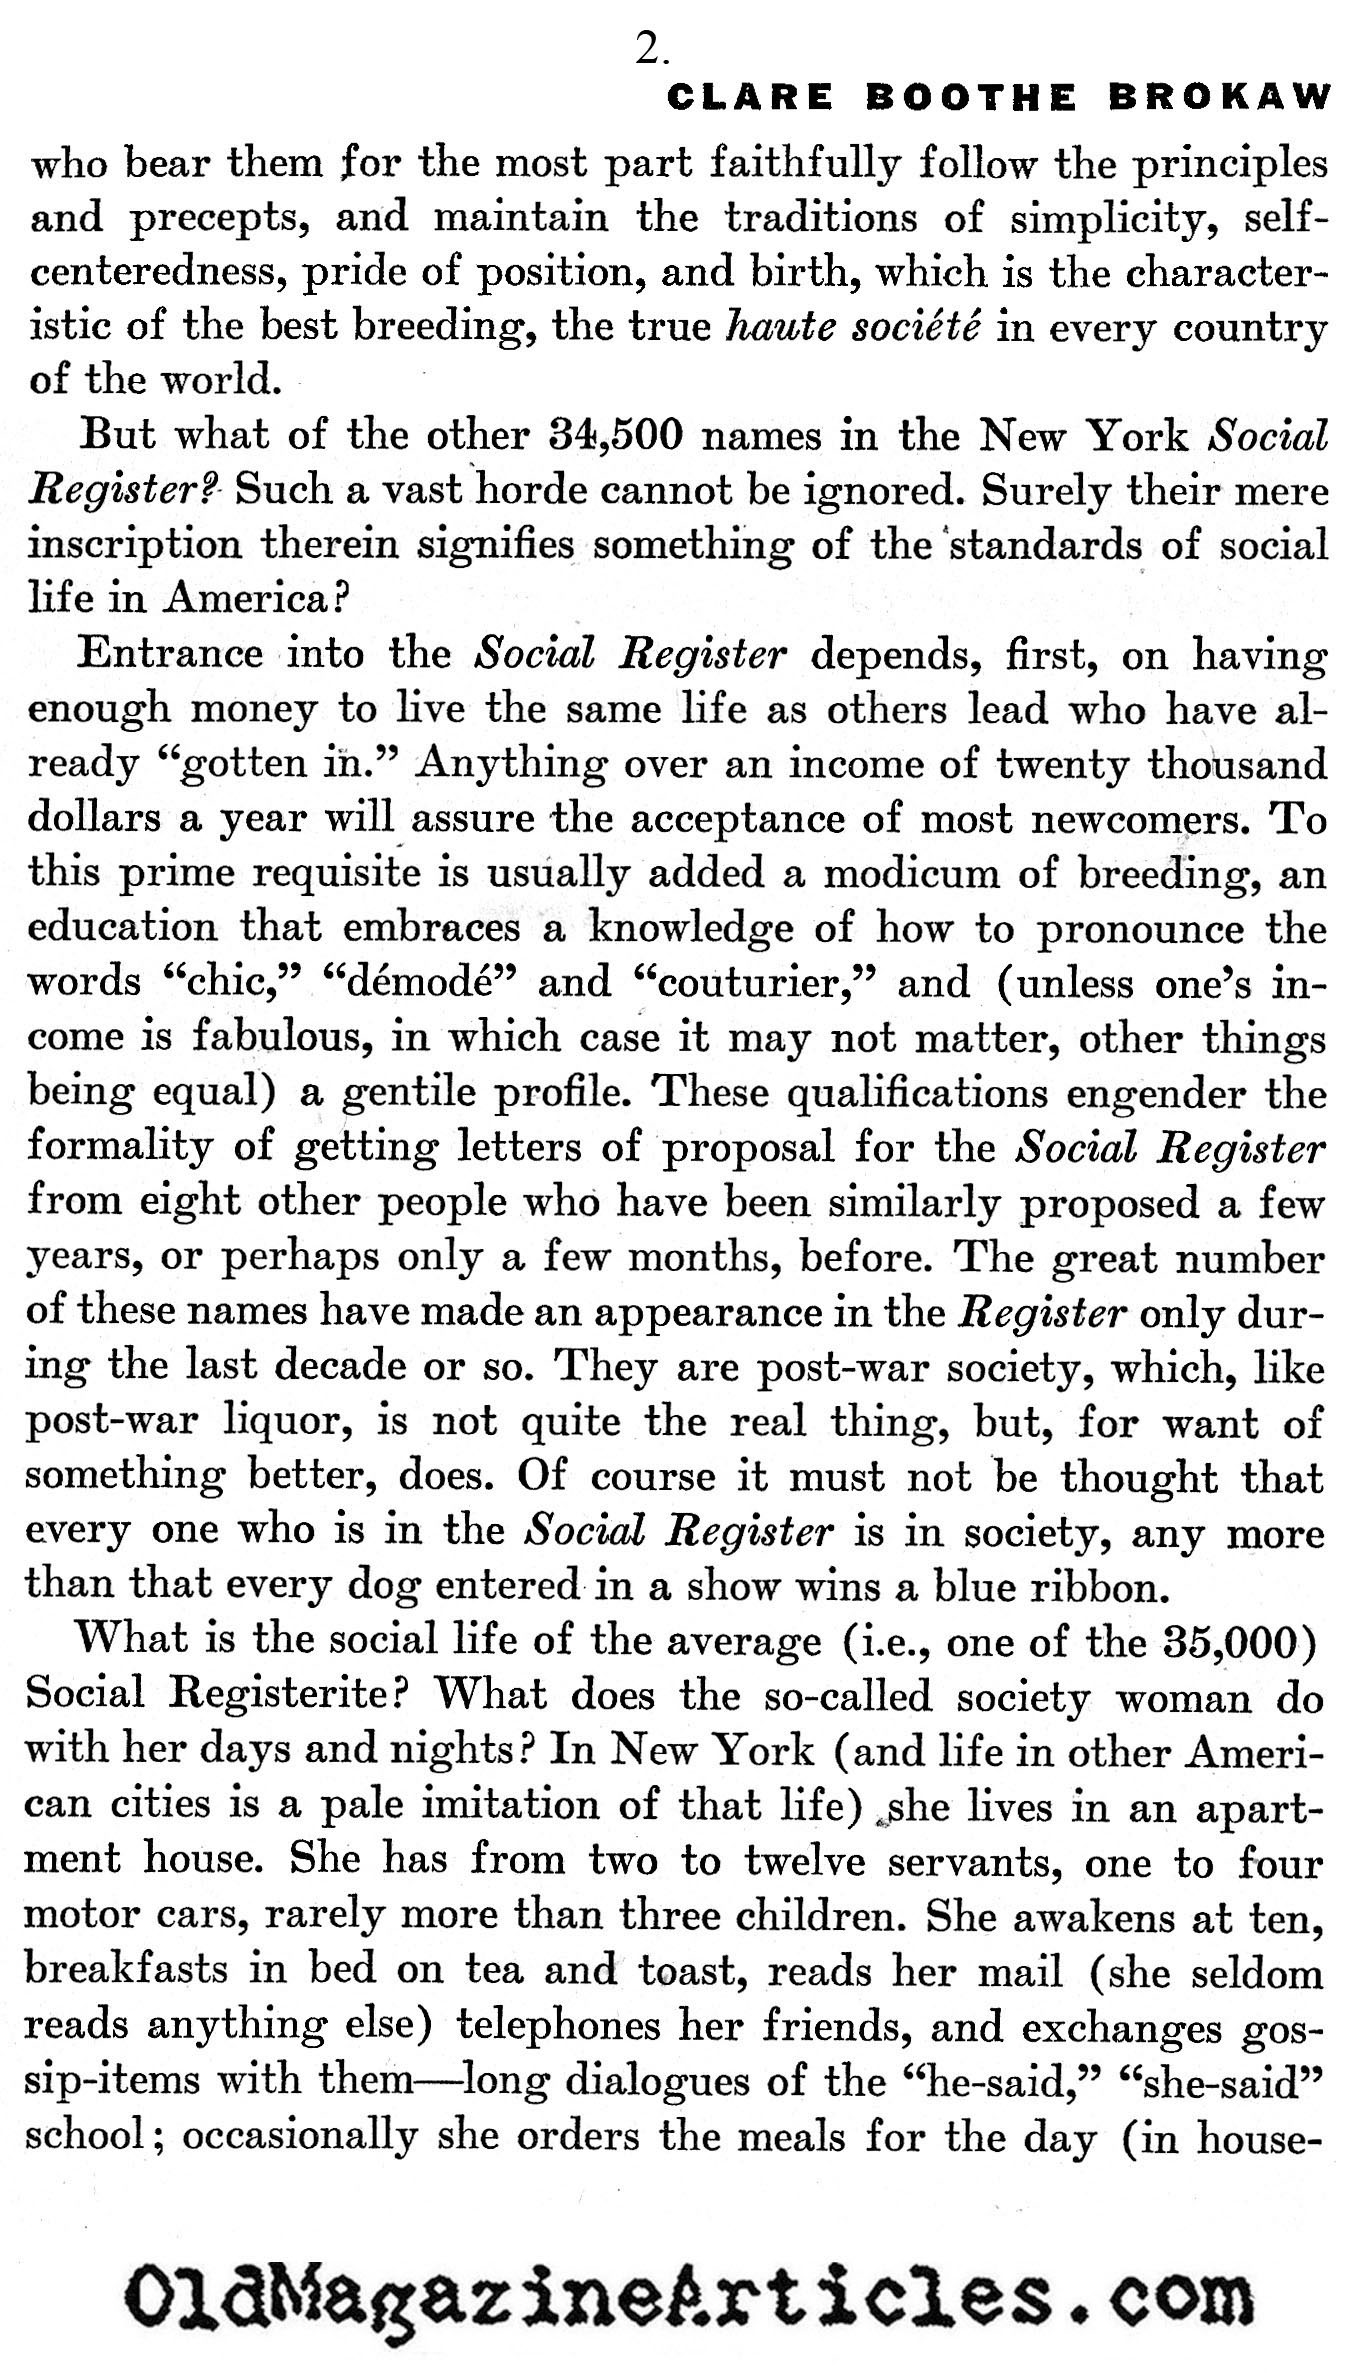 The New York Social Register (America, 1932)